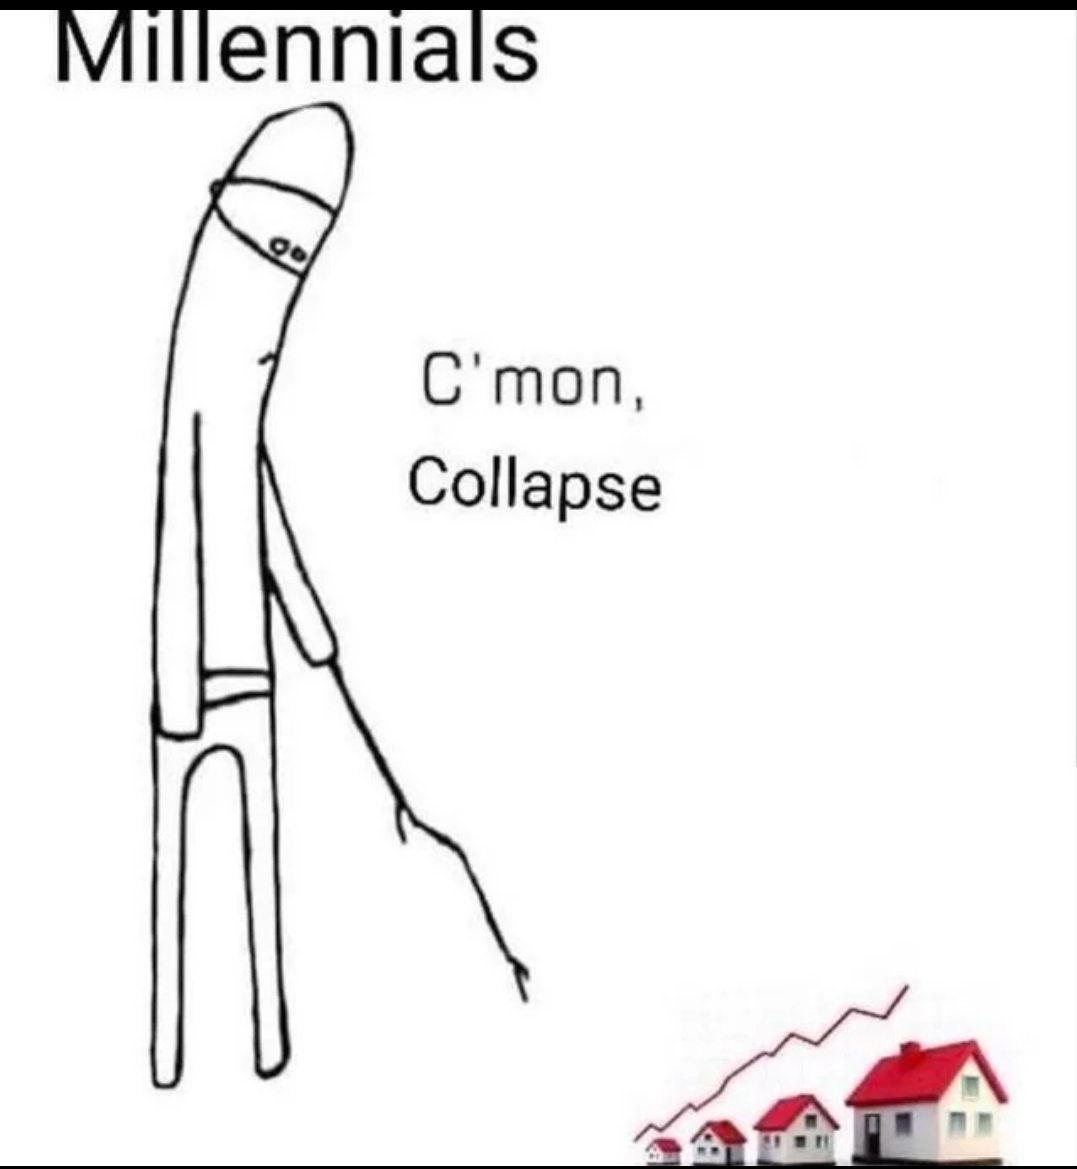 funny memes - cmon collapse - Millennials go C'mon, Collapse